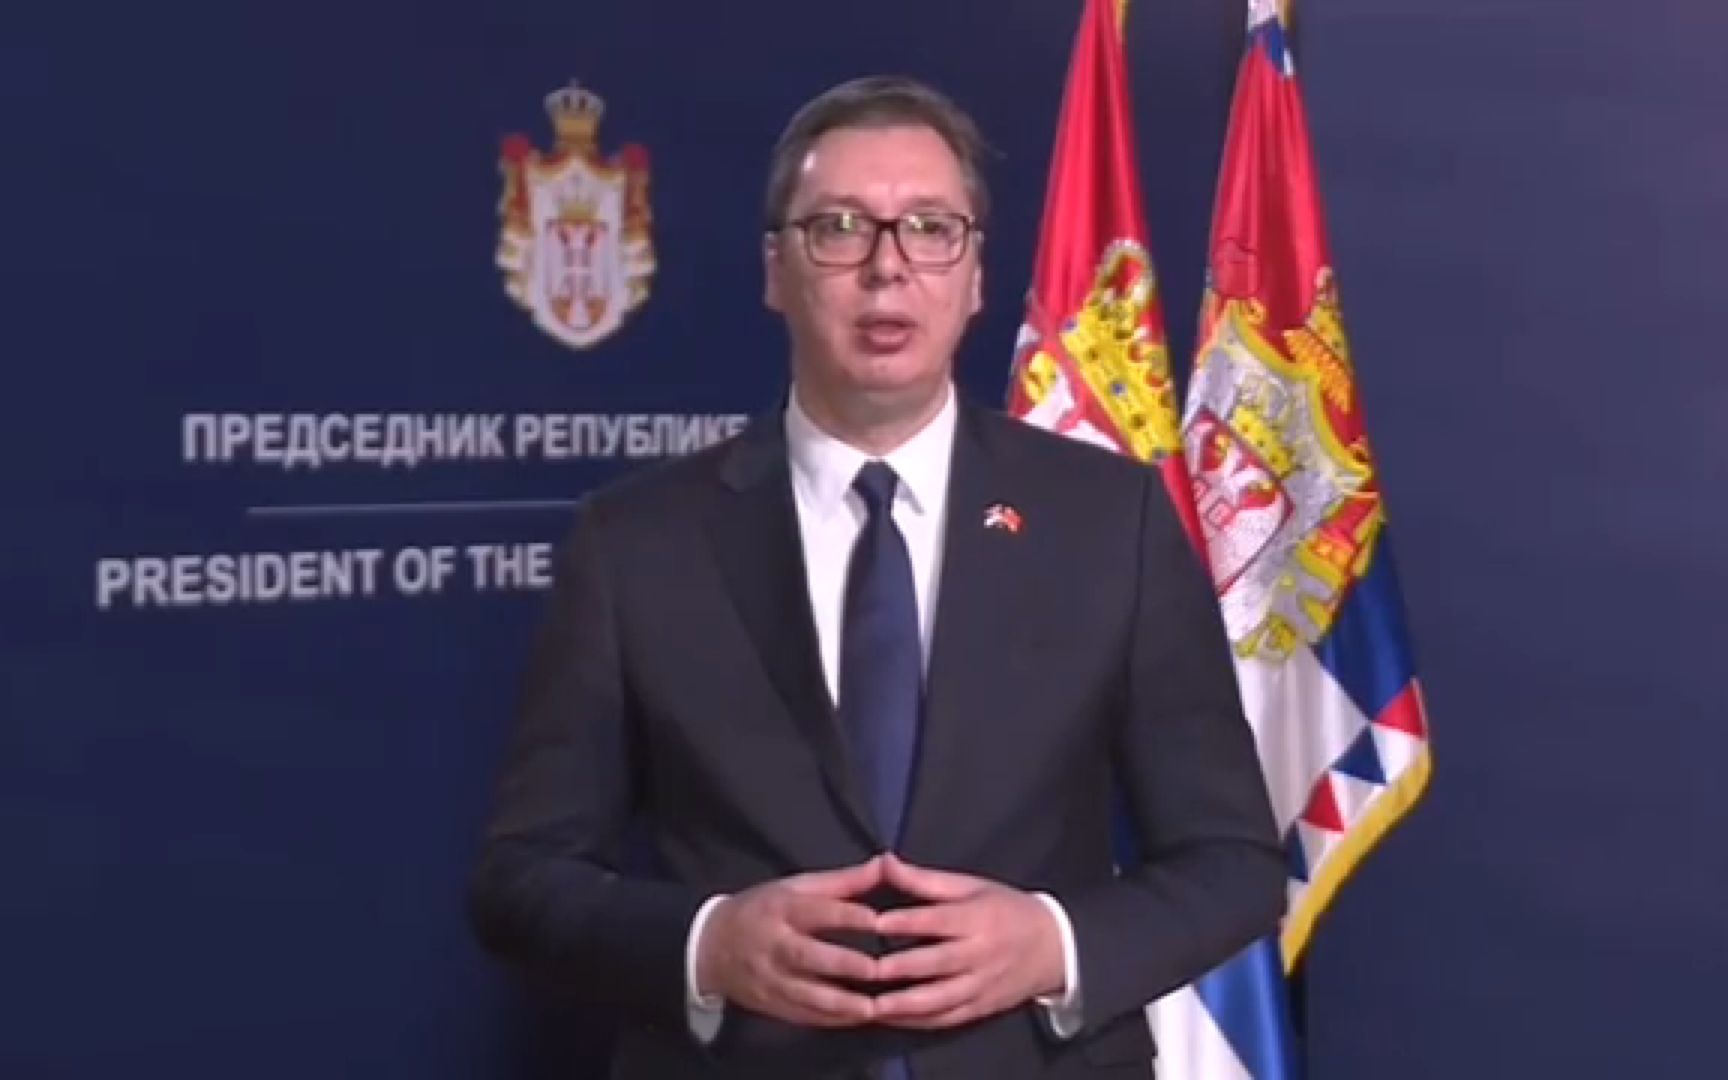 塞尔维亚总统武契奇宣布将辞去执政党主席职务 - 哔哩哔哩